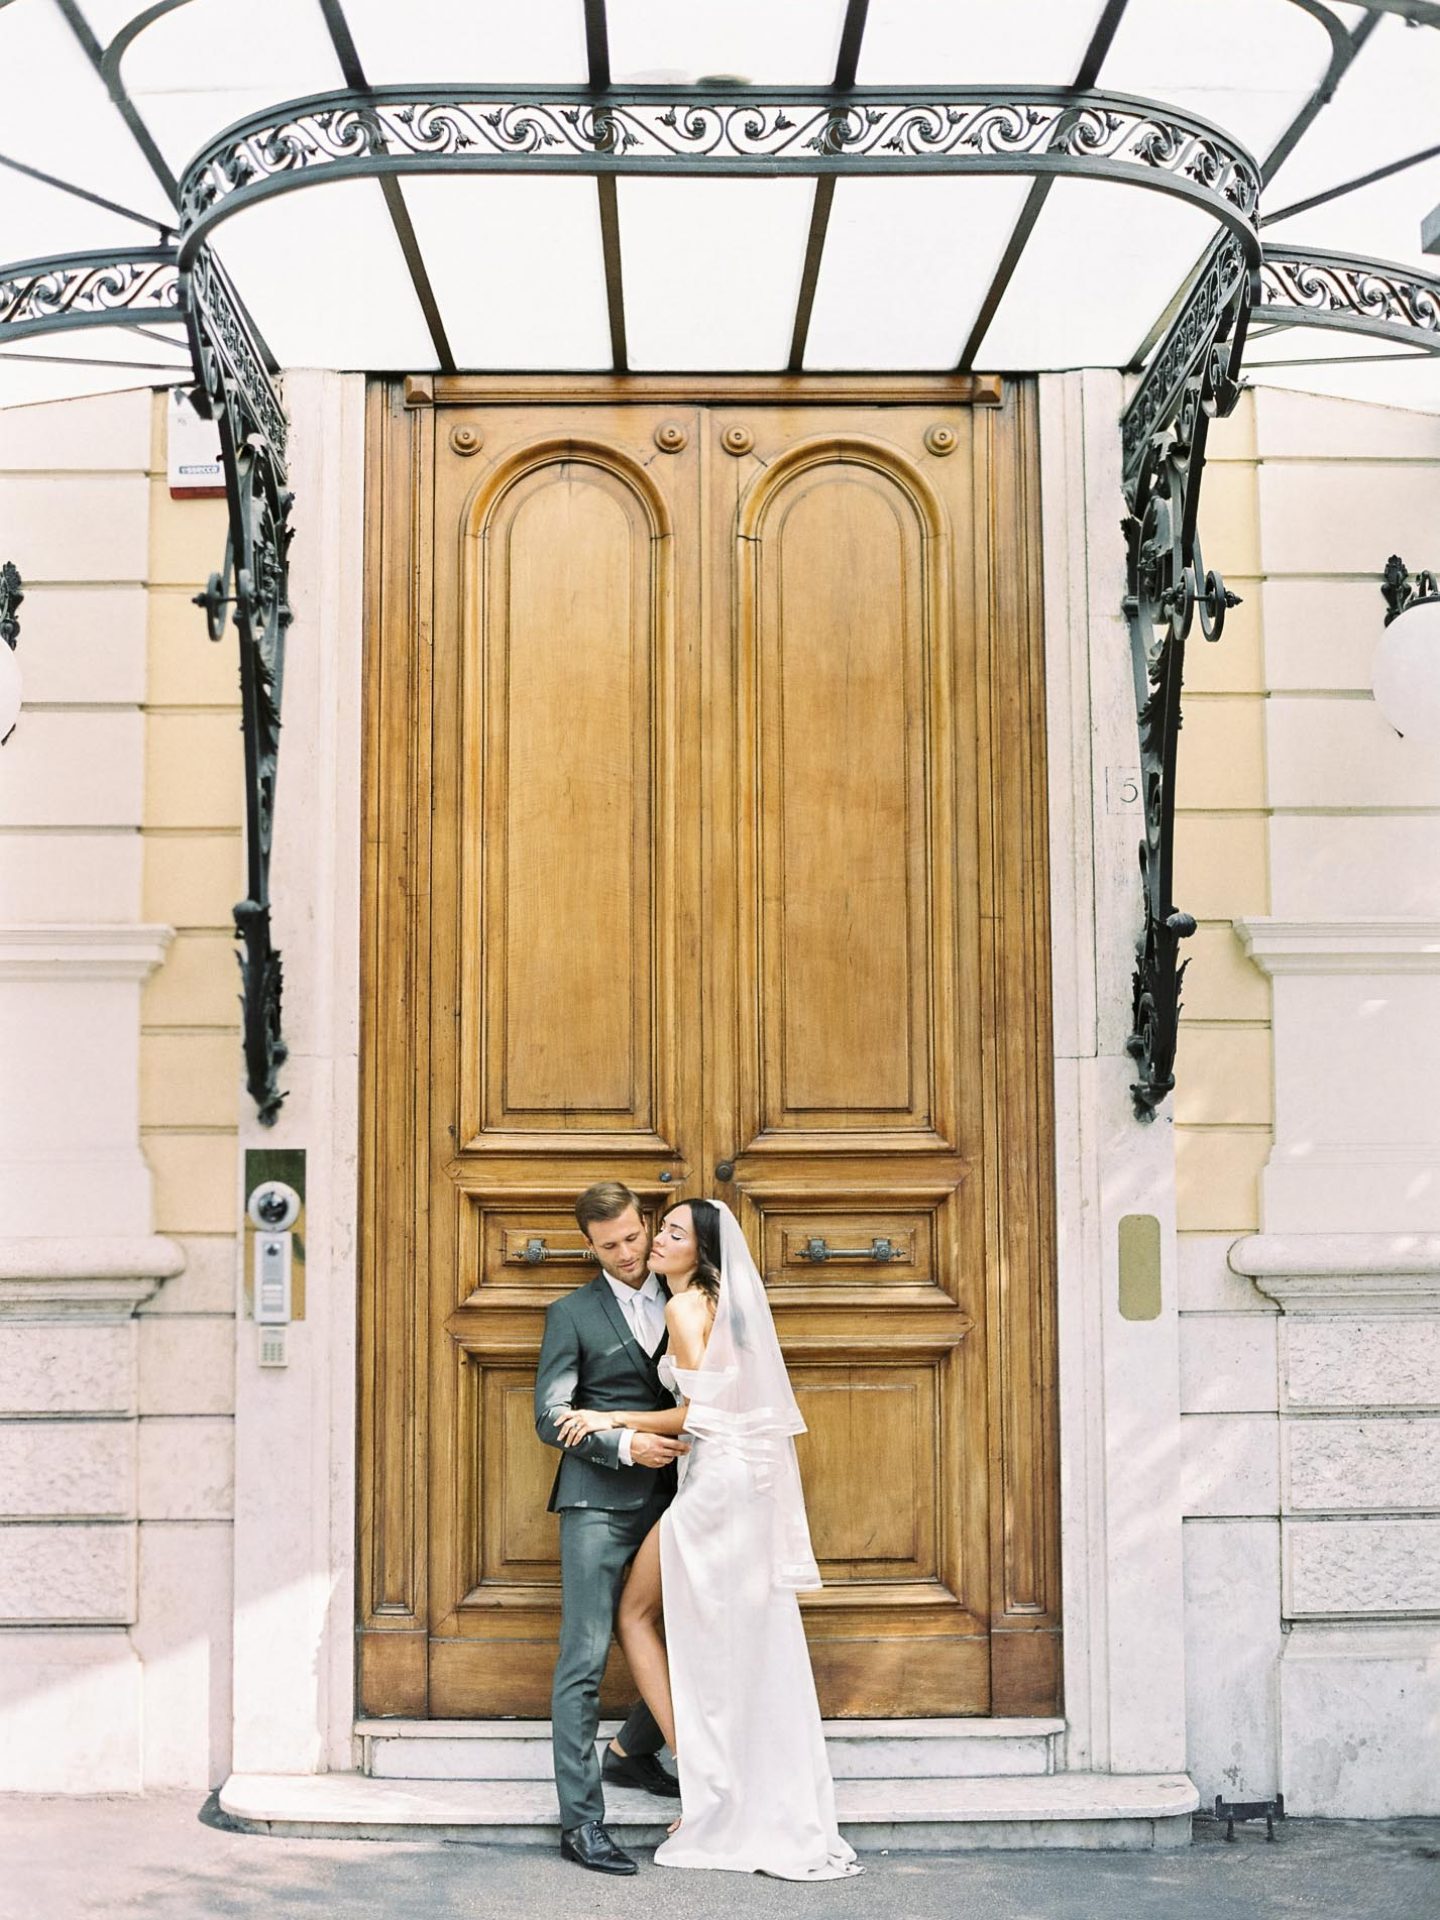 villa clara luxury wedding venue elopement in rome italy small weddings ideas